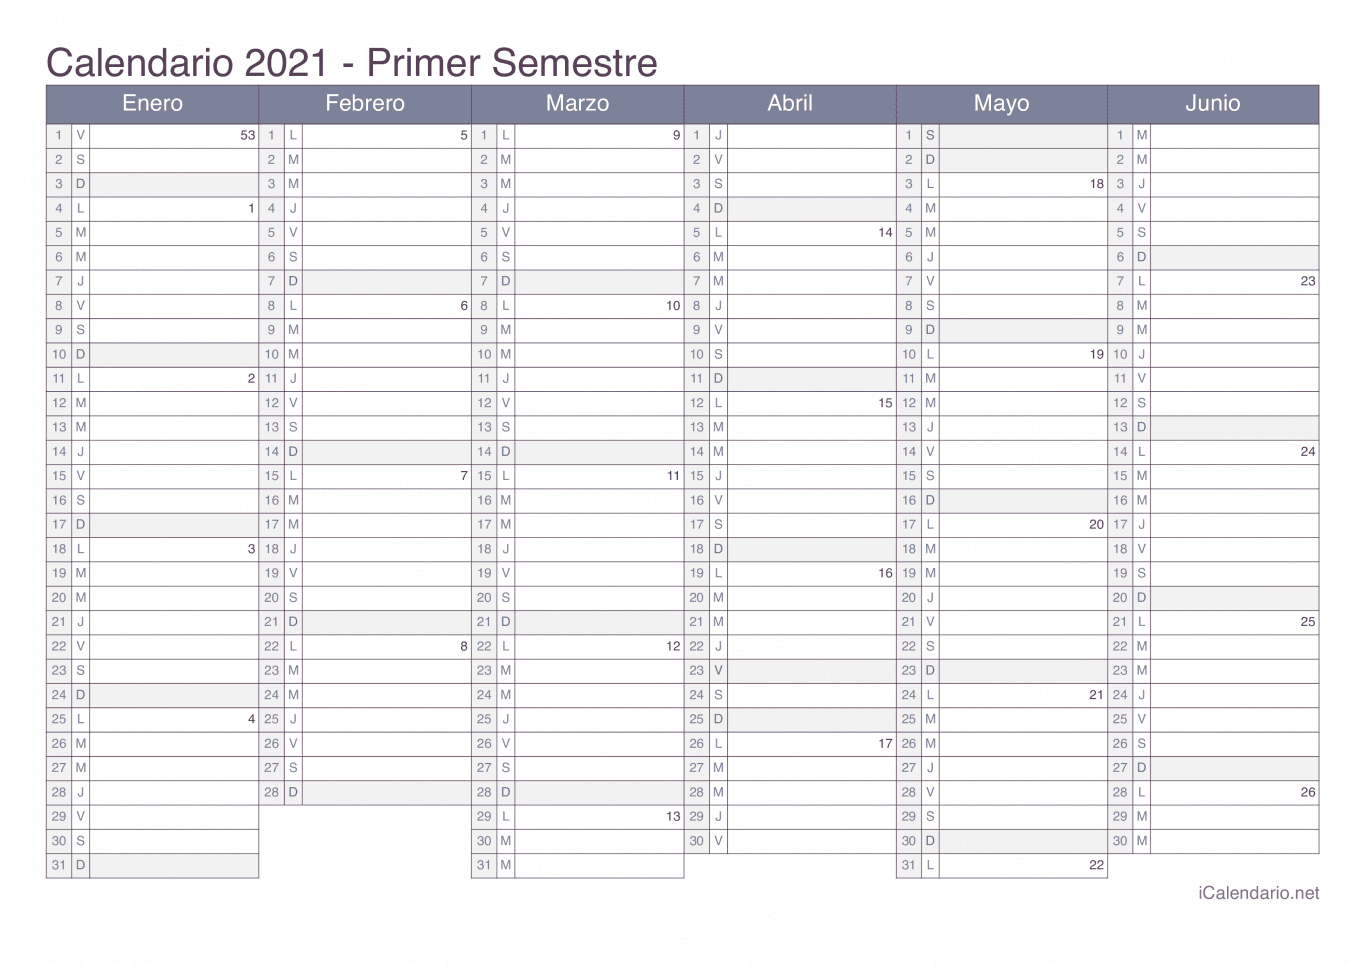 Calendario por semestre com números da semana 2021 - Office